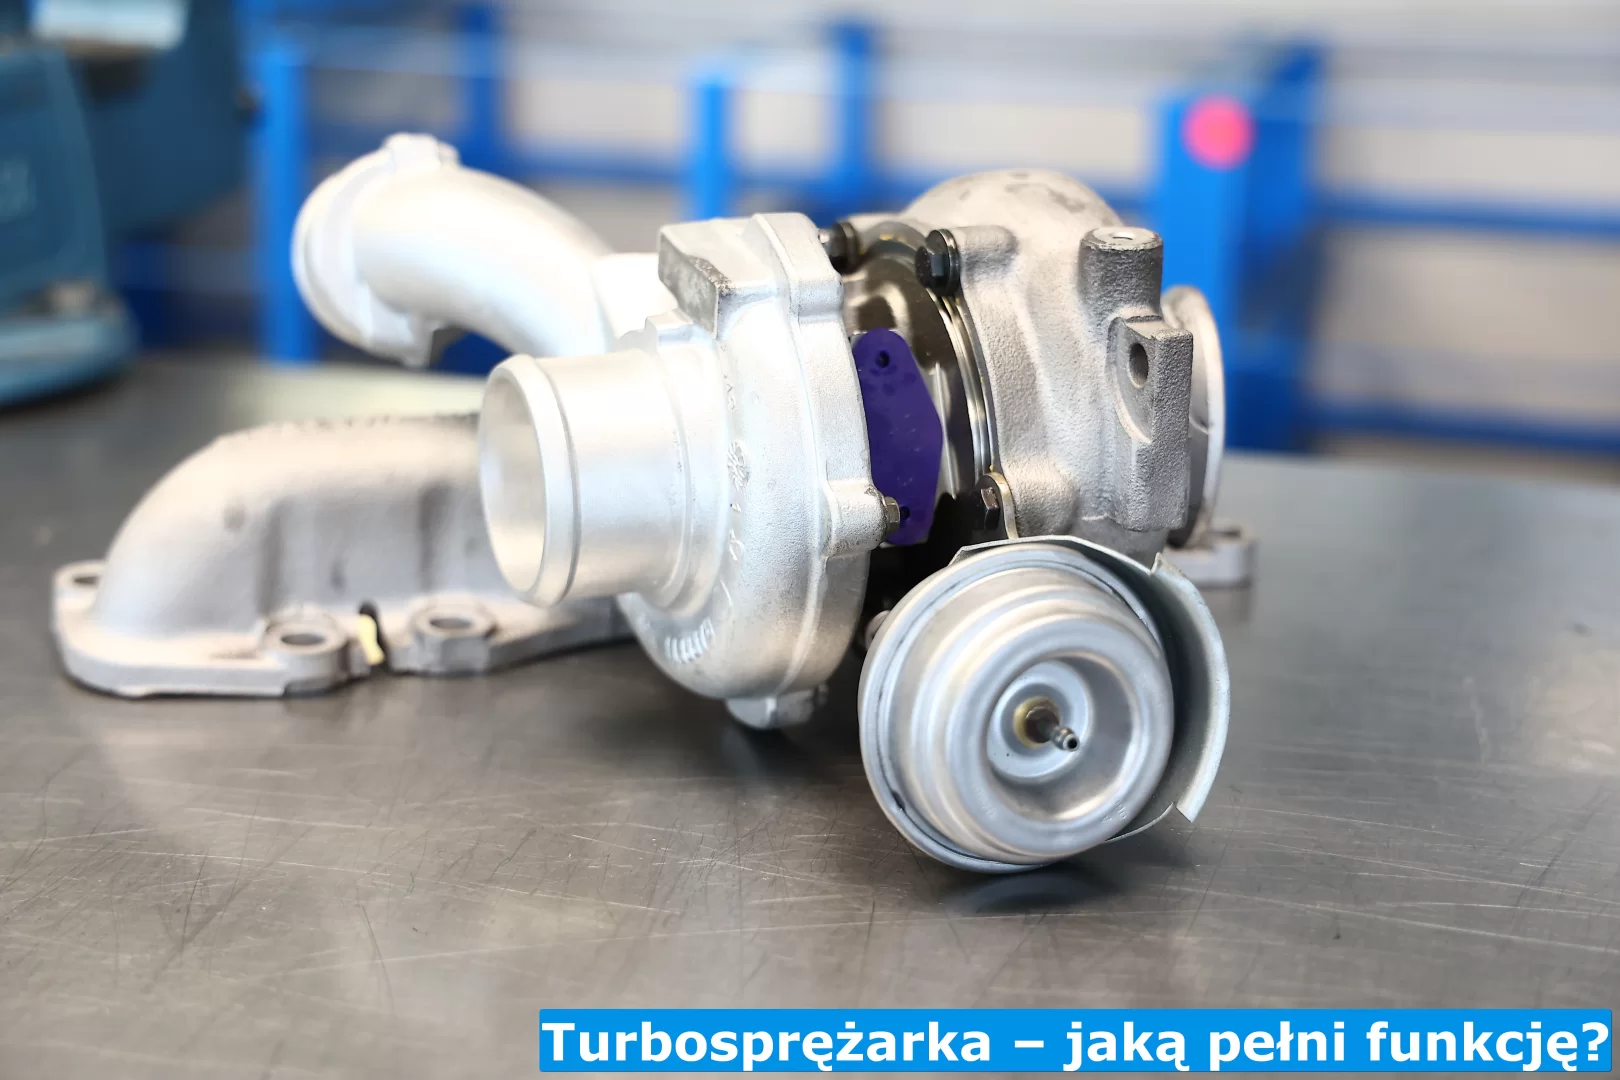 funkcja turbosprężarki